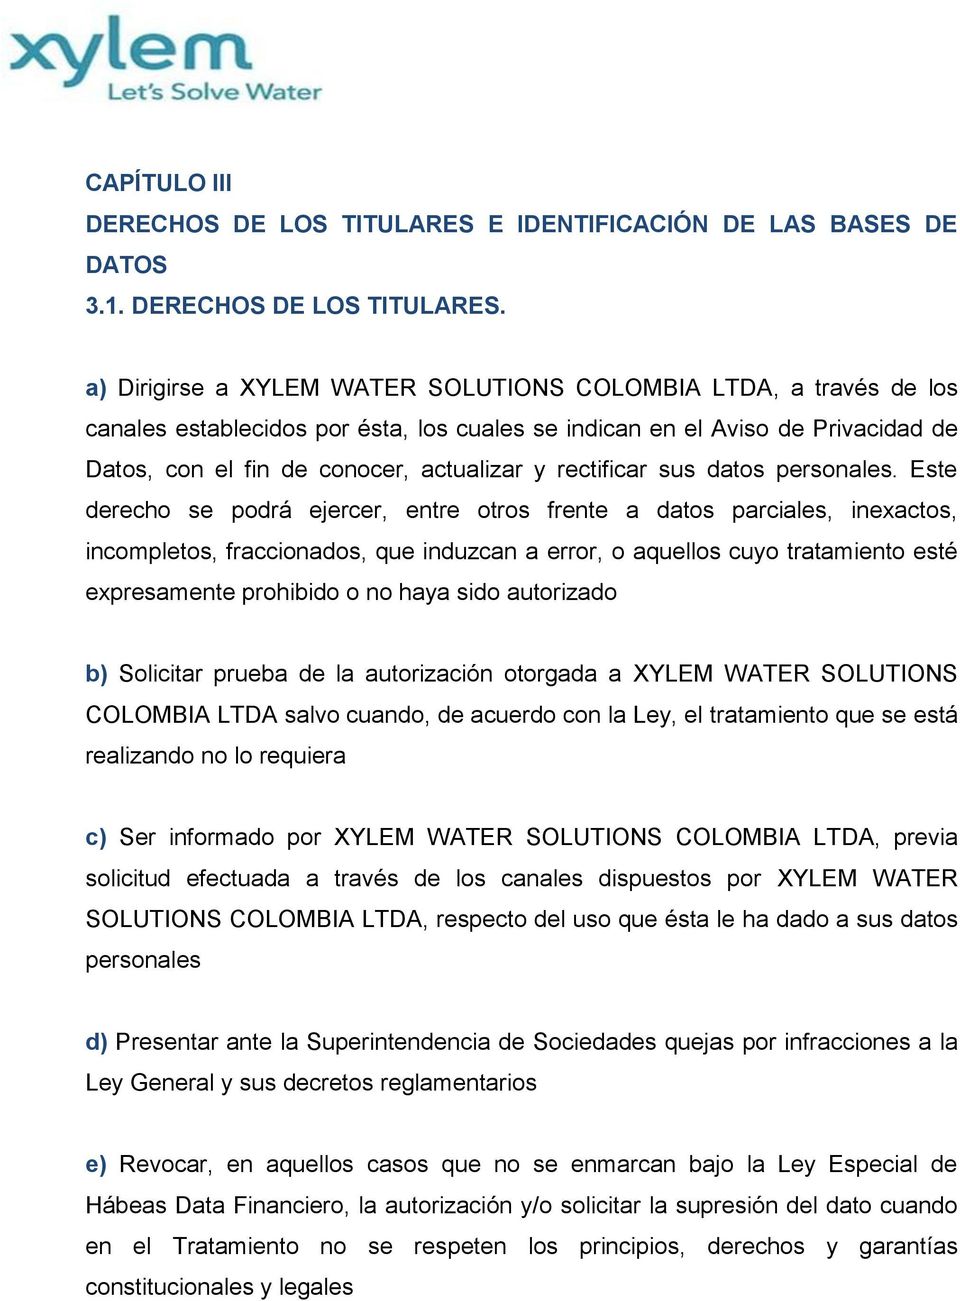 a) Dirigirse a XYLEM WATER SOLUTIONS COLOMBIA LTDA, a través de los canales establecidos por ésta, los cuales se indican en el Aviso de Privacidad de Datos, con el fin de conocer, actualizar y